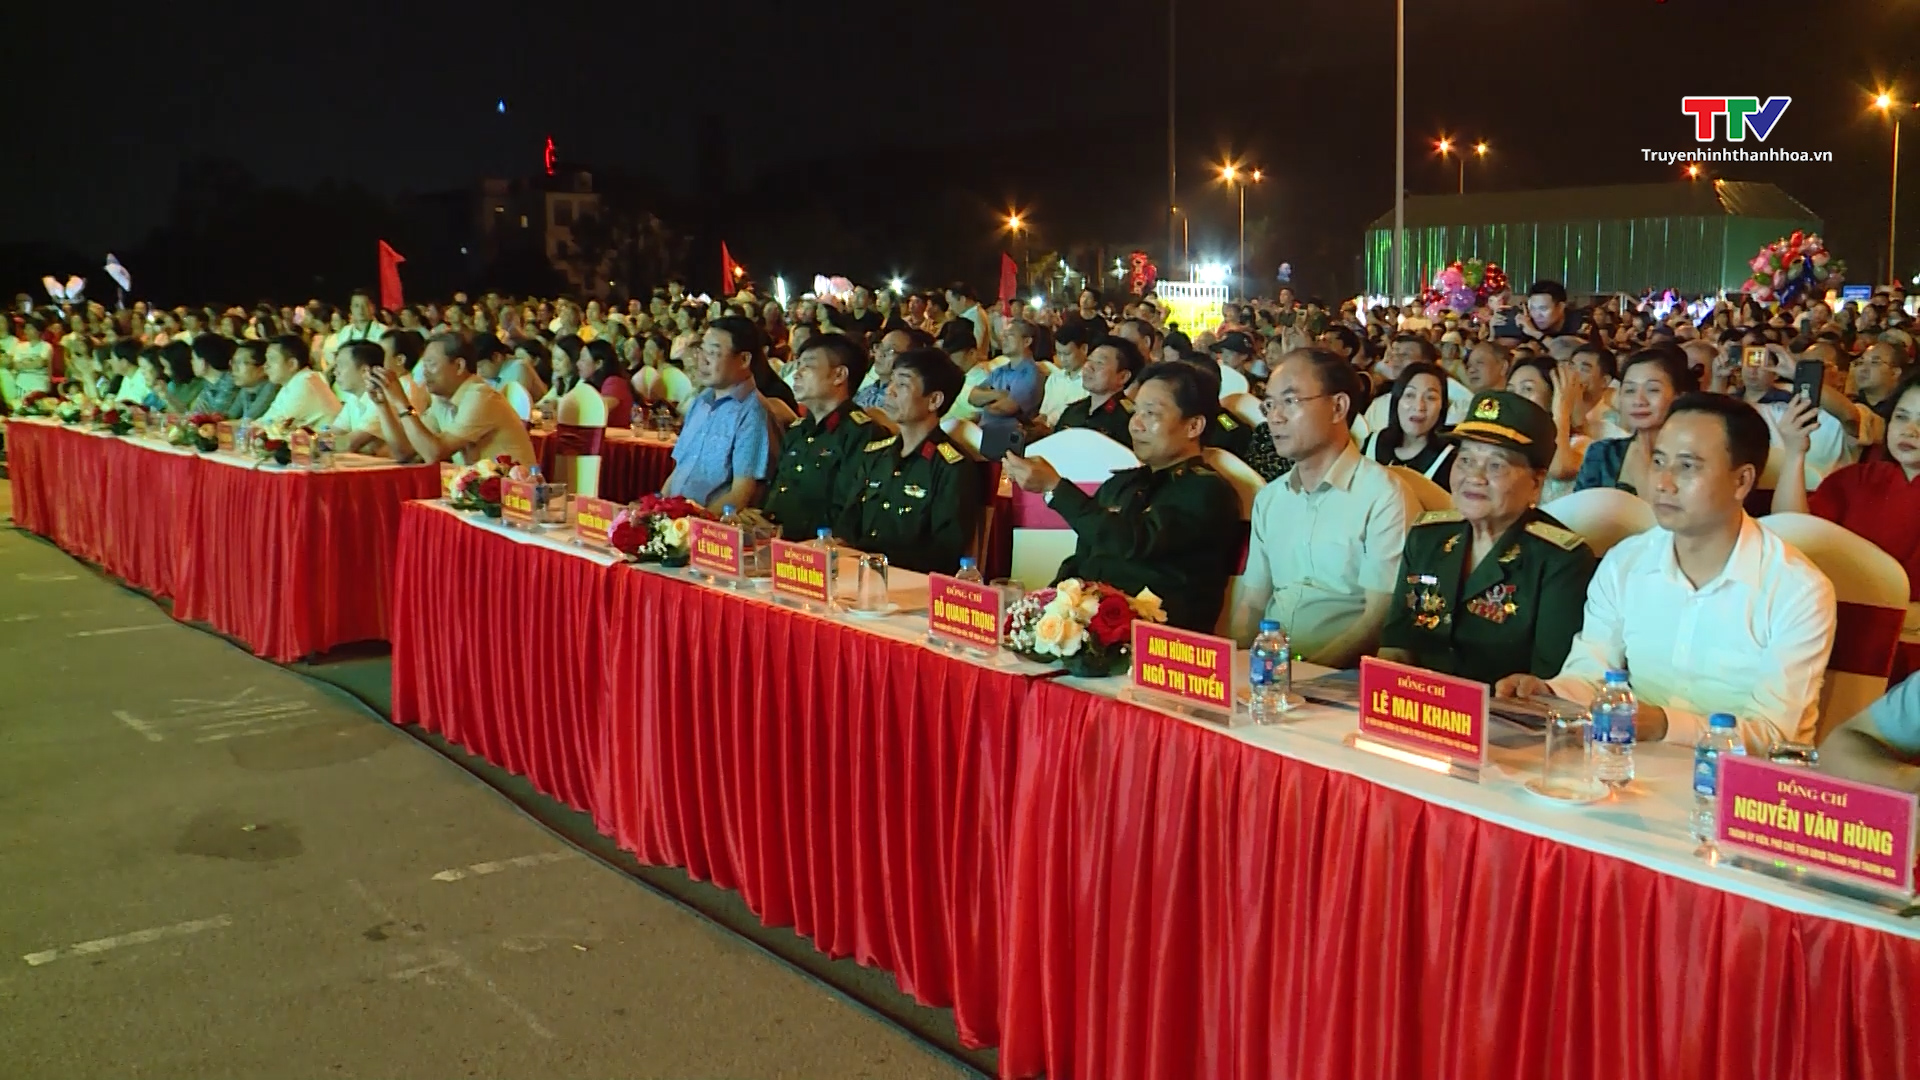 Thành phố Thanh Hóa tổ chức chương trình văn nghệ chào mừng 59 năm Hàm Rồng chiến thắng- Ảnh 1.